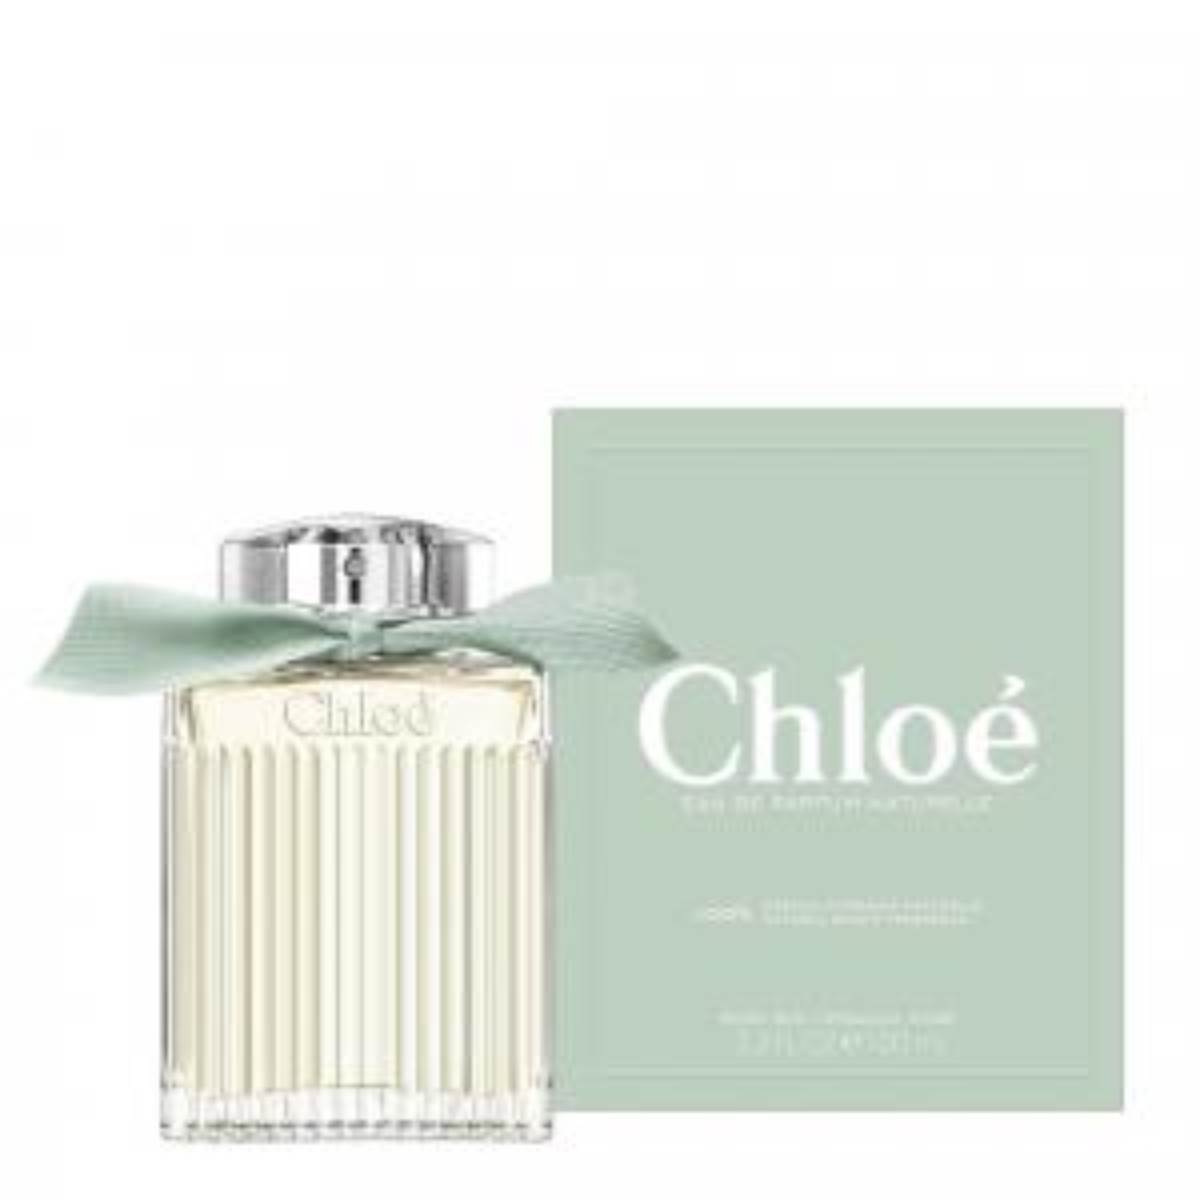 Novi Chloe parfem zimski je cvjetni parfem kojemu je glavni sastojak organska ruža.